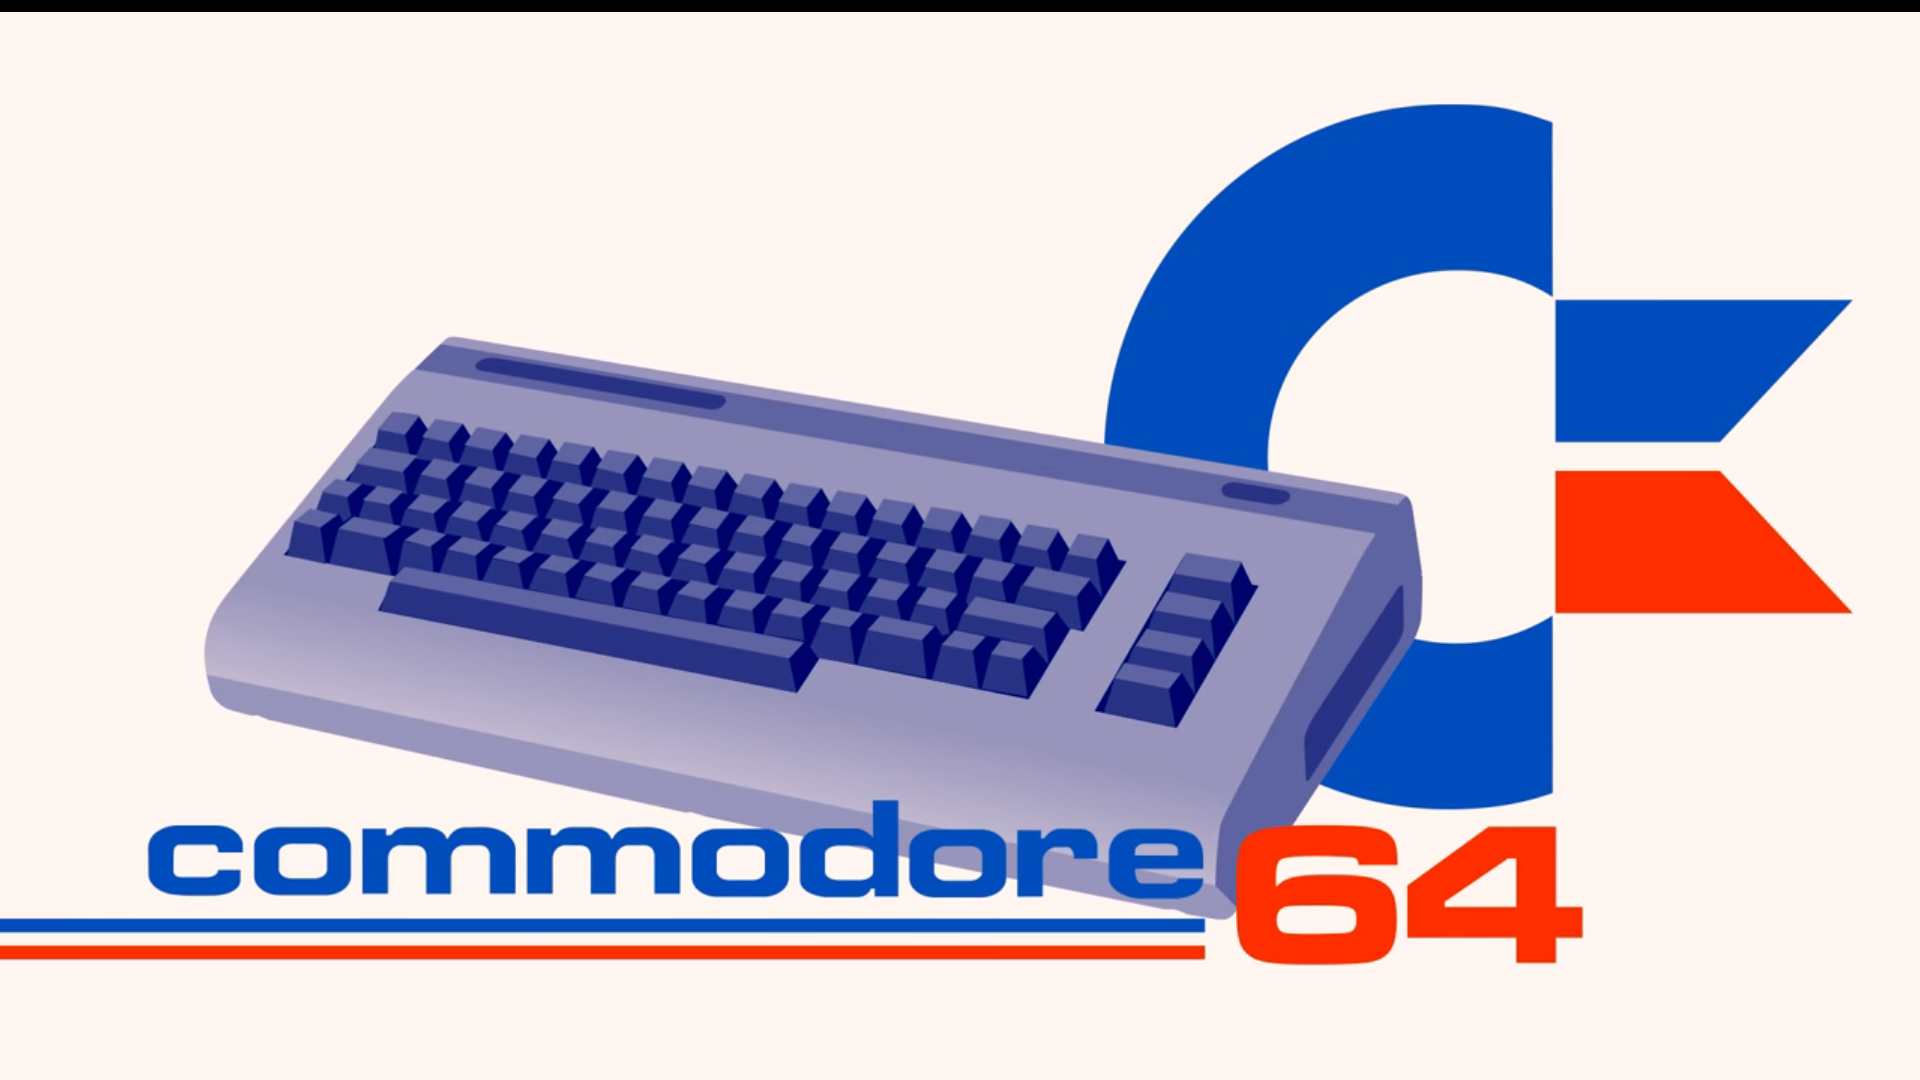 commodore 64 벽지,컴퓨터 키보드,과학 기술,폰트,스페이스 바,강청색